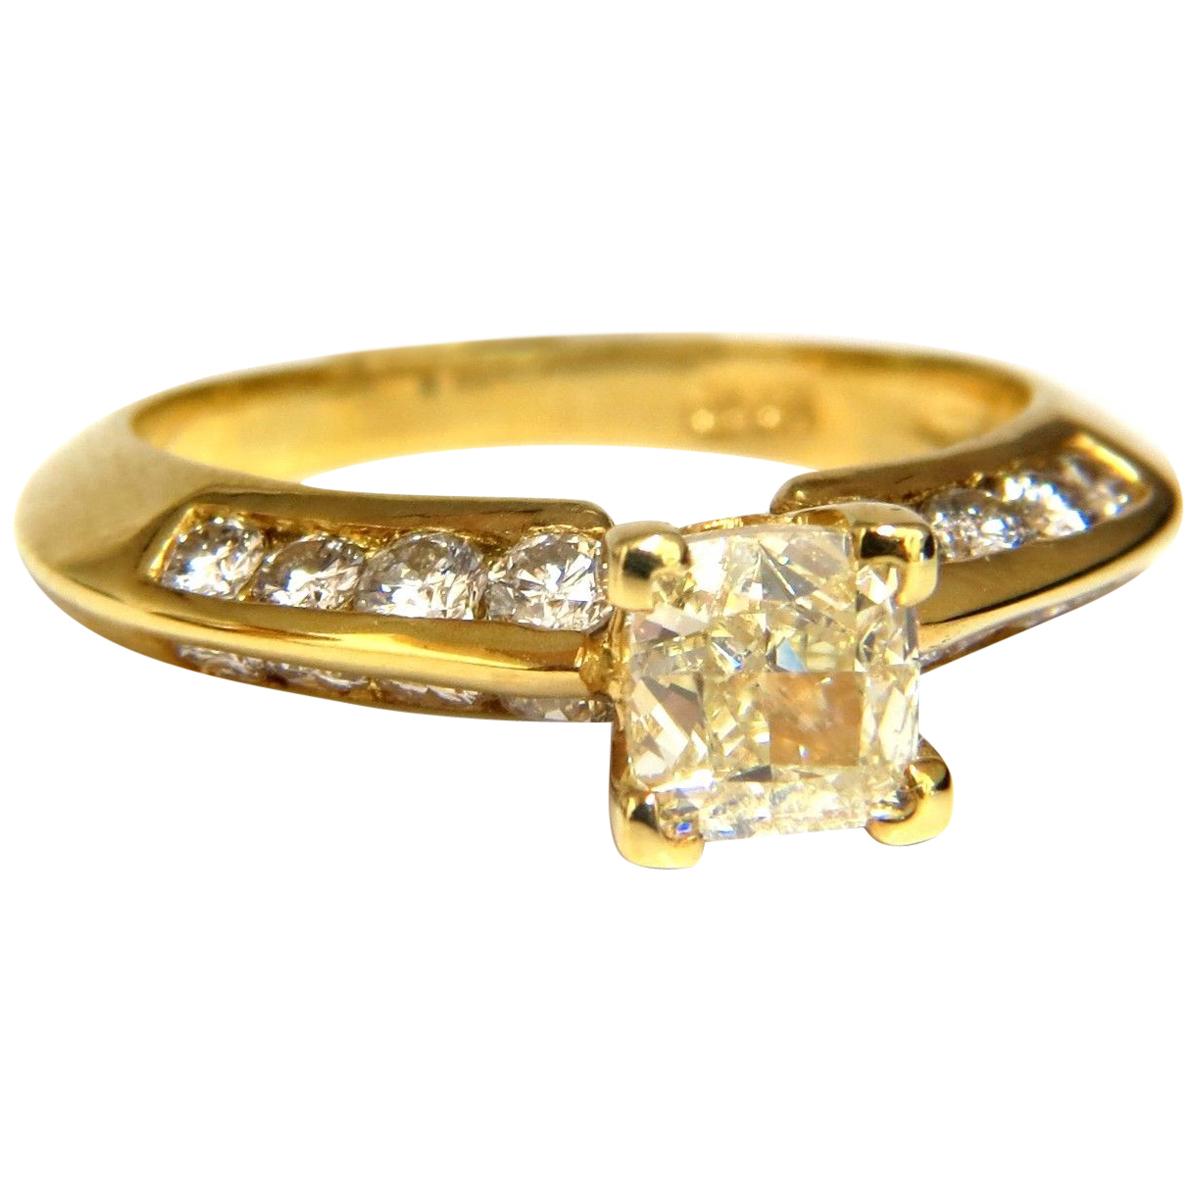 GIA Certified 2.51 Carat Fancy Yellow Cushion Cut Diamond Ring 18 Karat